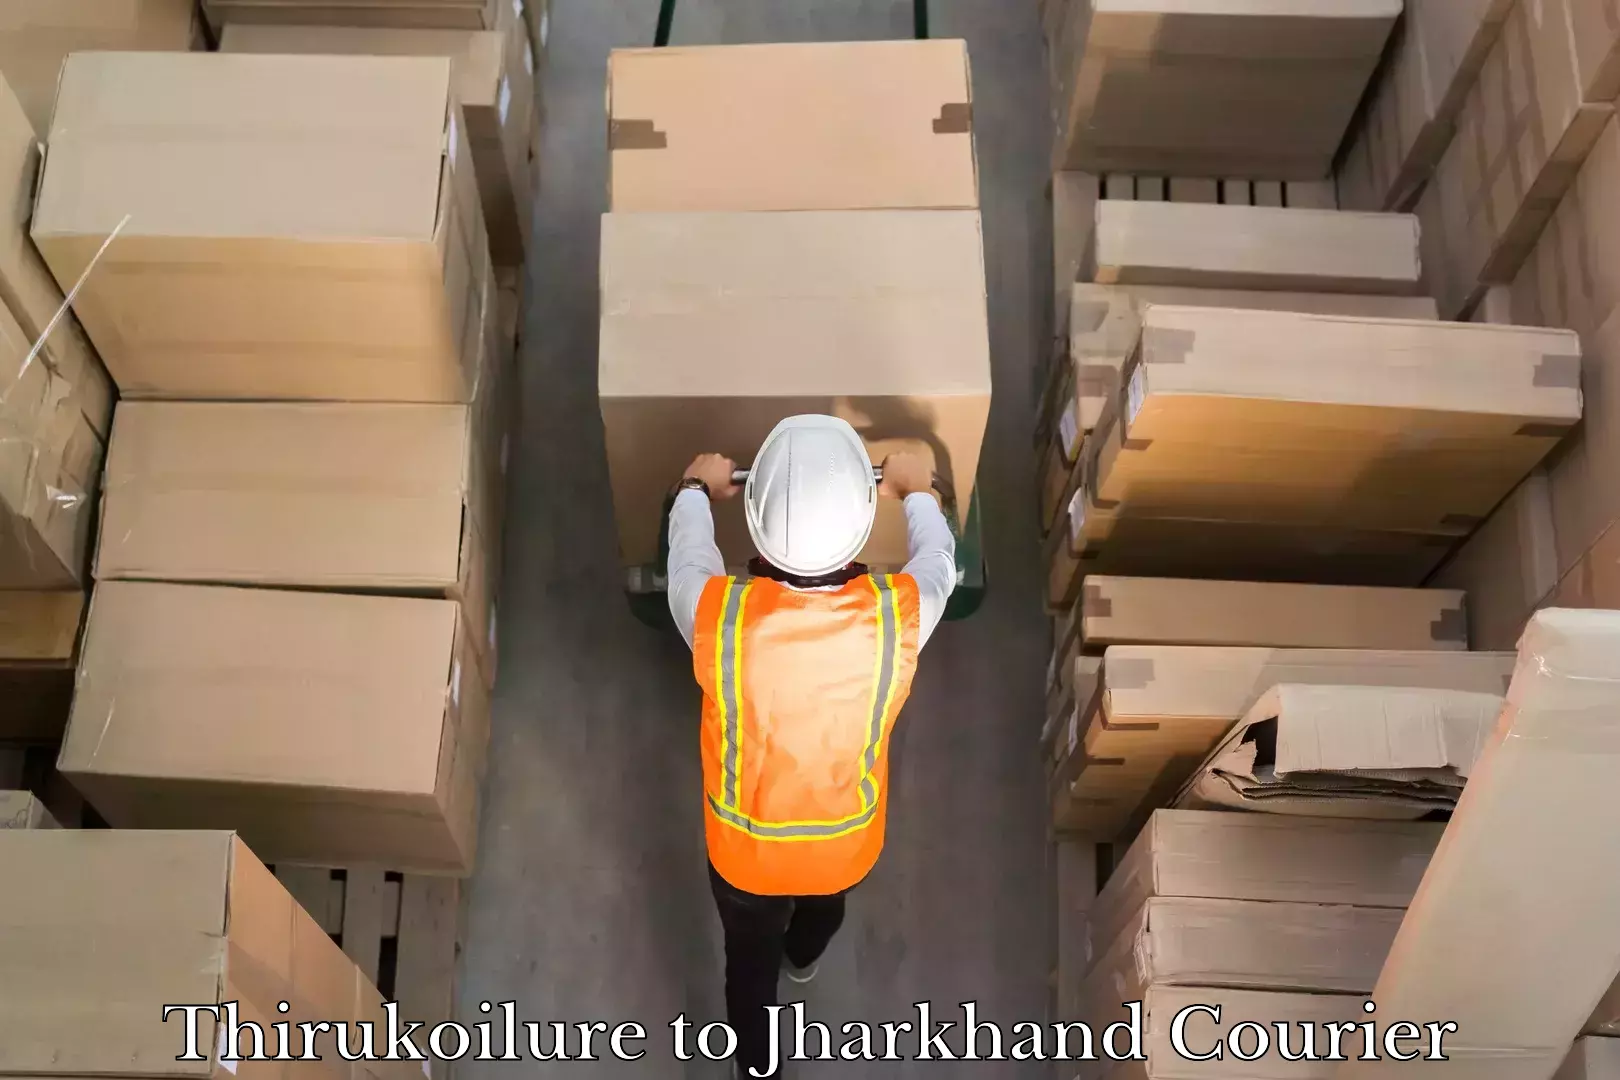 High-capacity shipping options Thirukoilure to Jharkhand